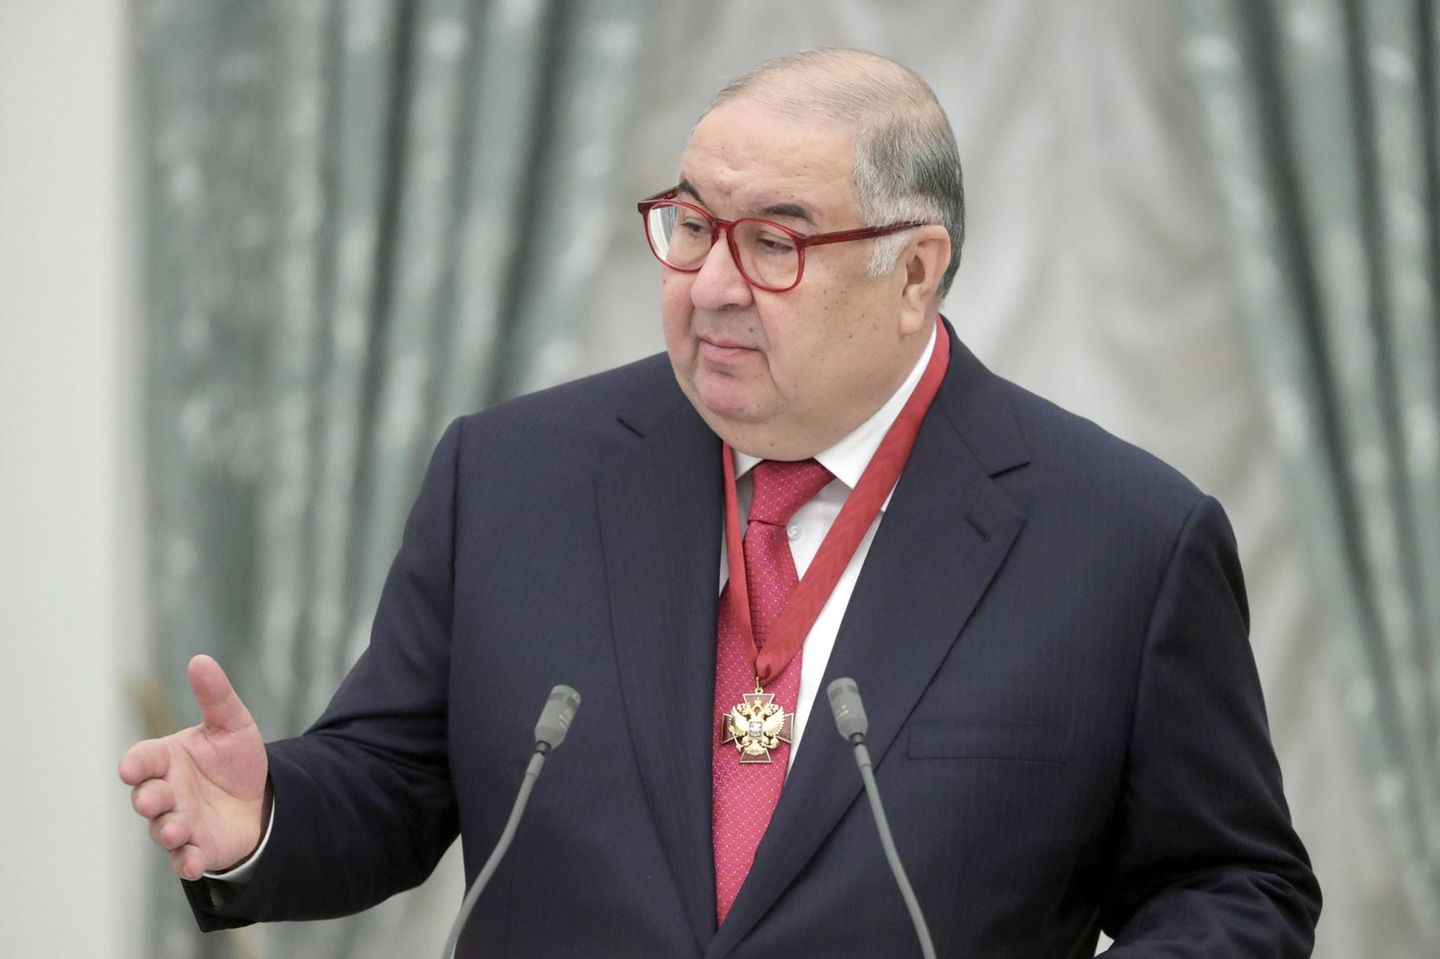 Alischer Usmanow gehört zu den reichsten Oligarchen Russlands